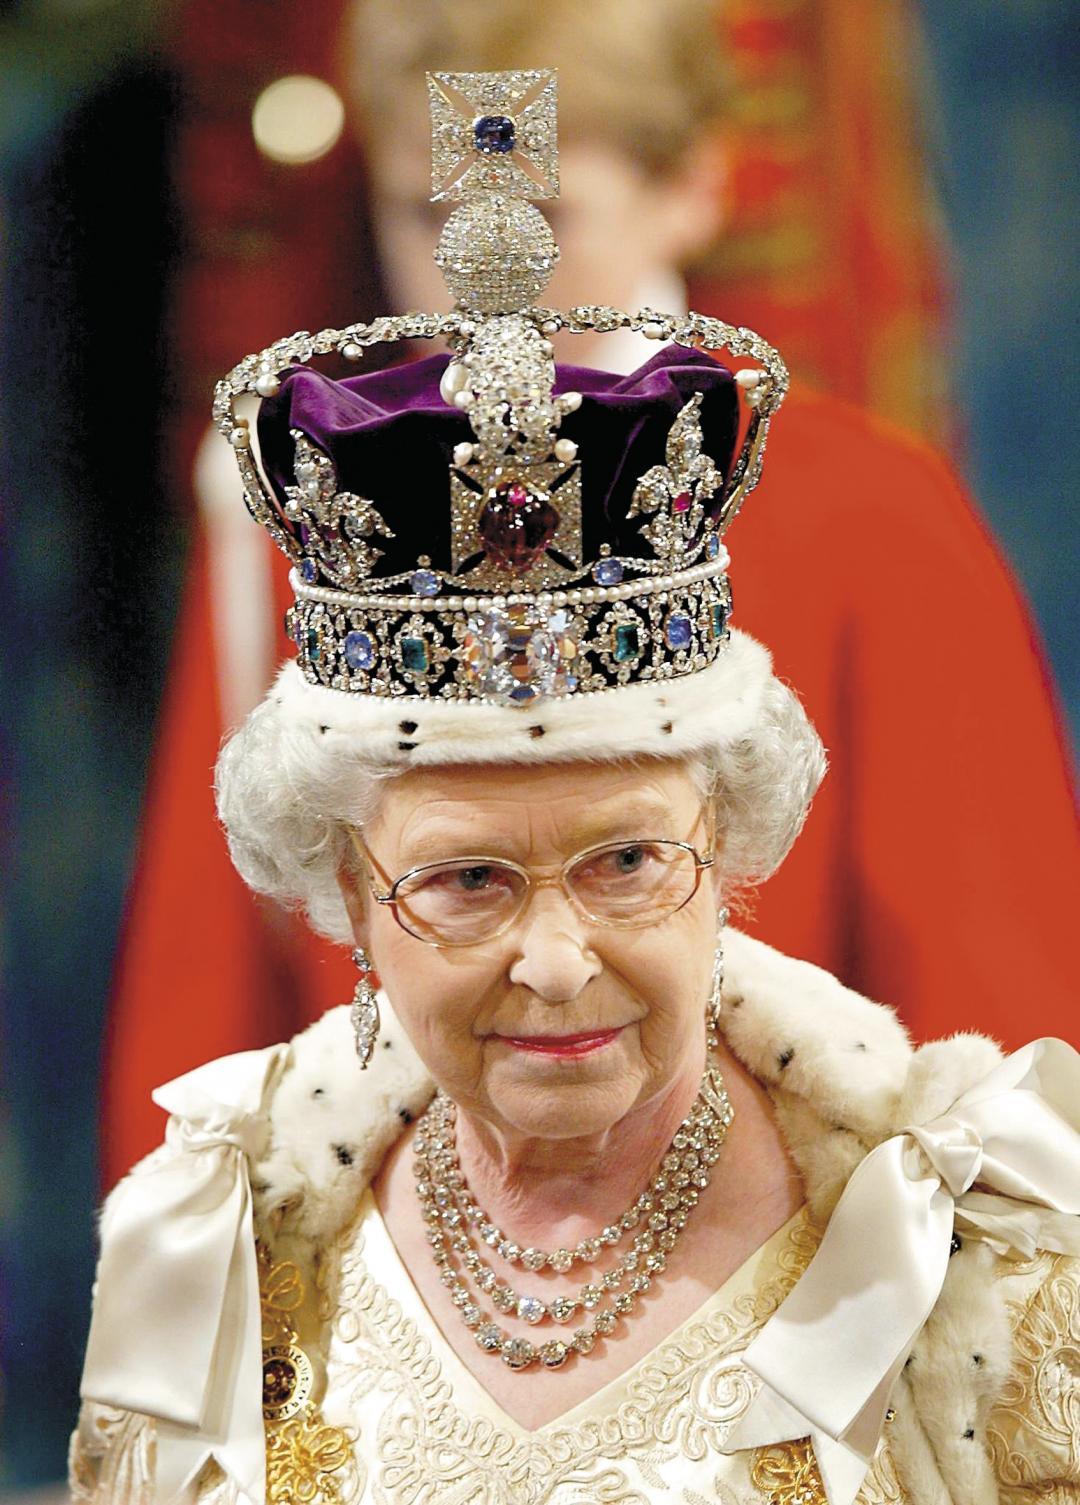 女王, 皇冠, 君主, 女王 免费图片 - Public Domain Pictures